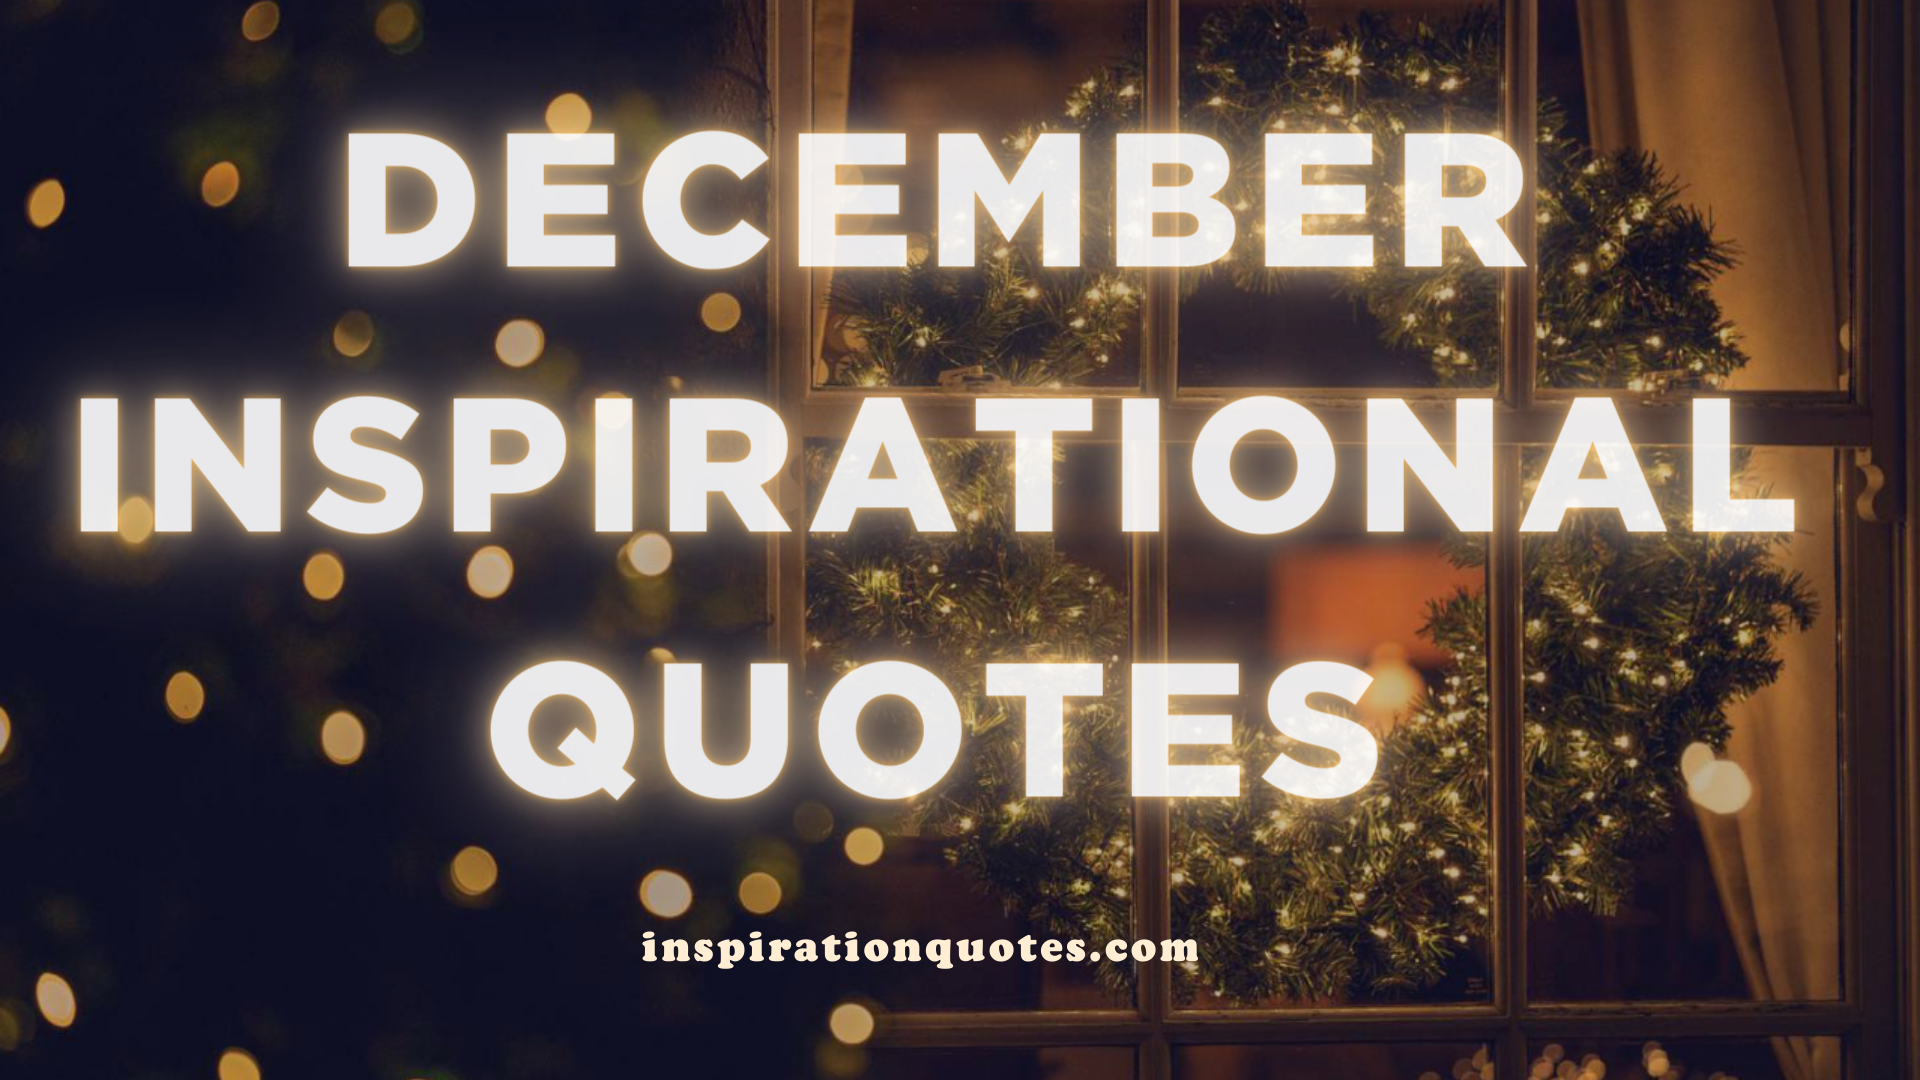 Inspirational Quates For A December Holyday